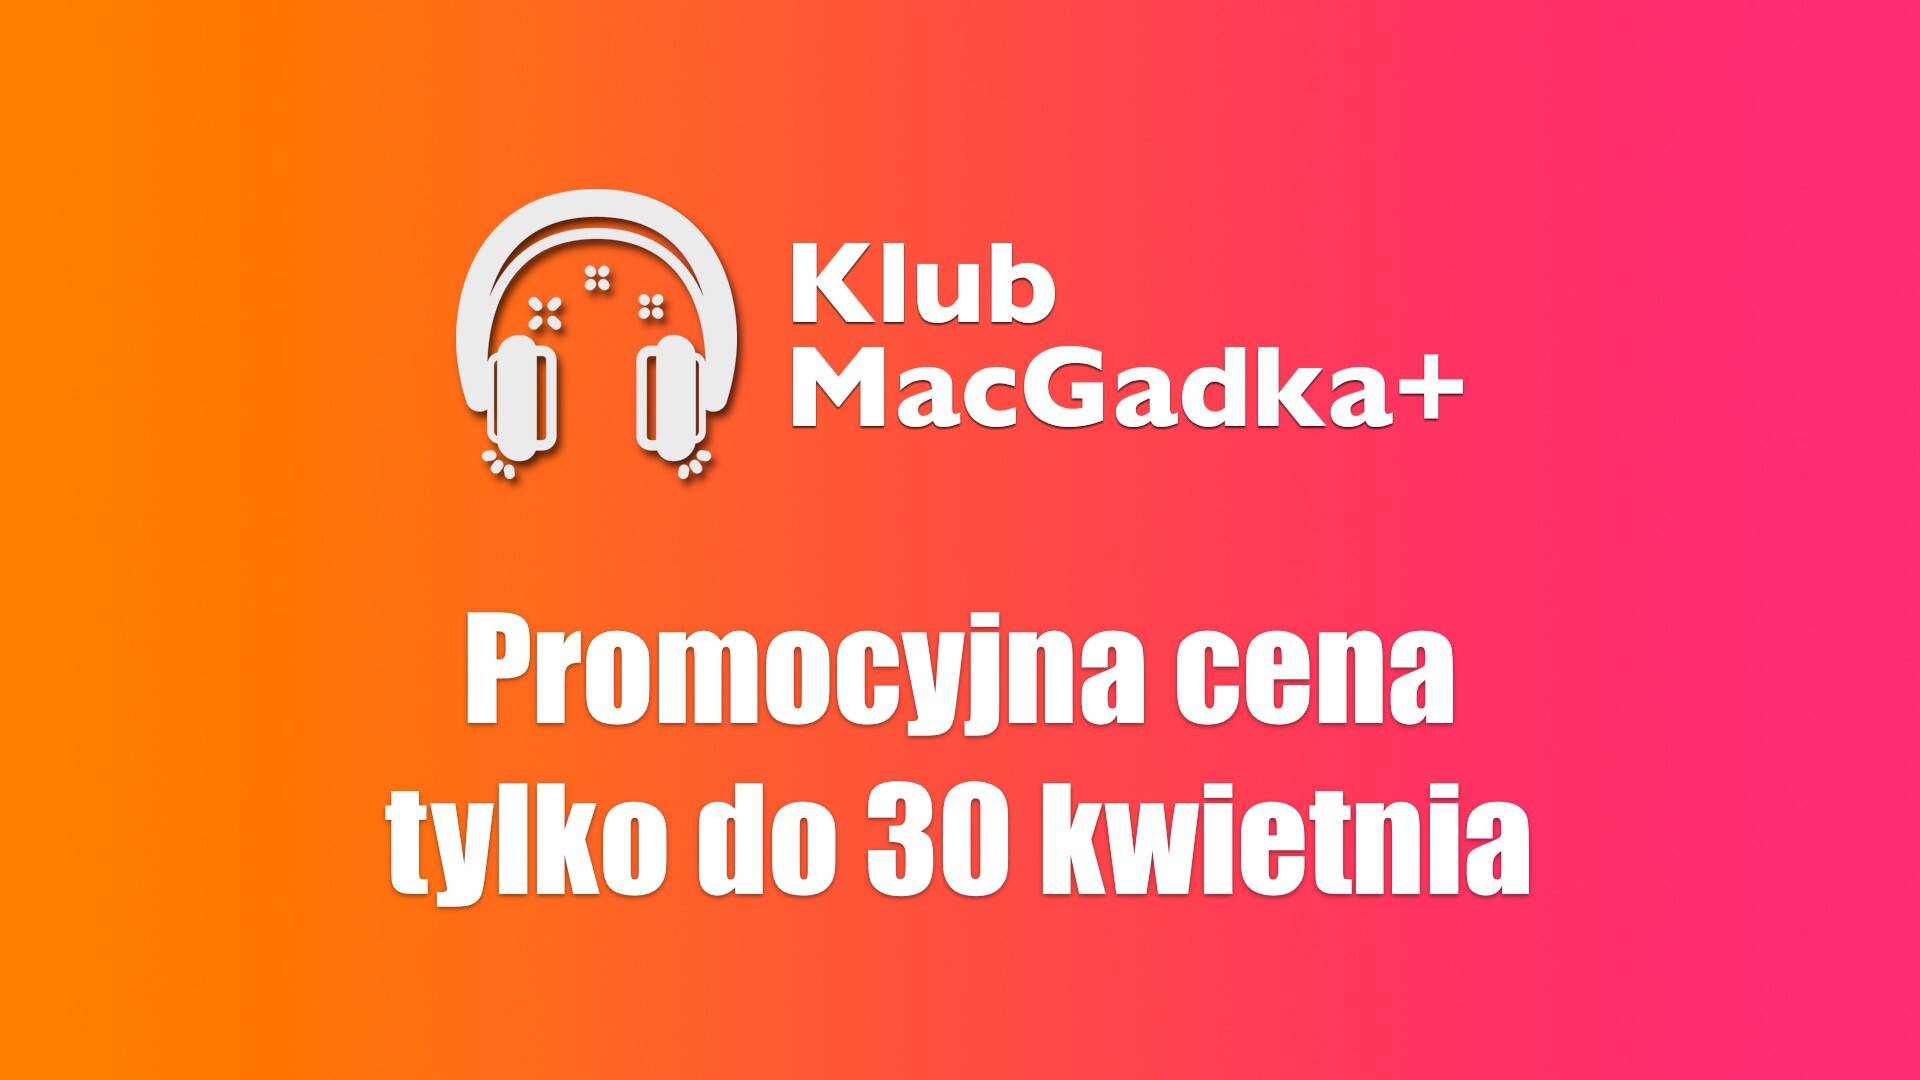 https://www.macgadka.pl/klub-macgadka/